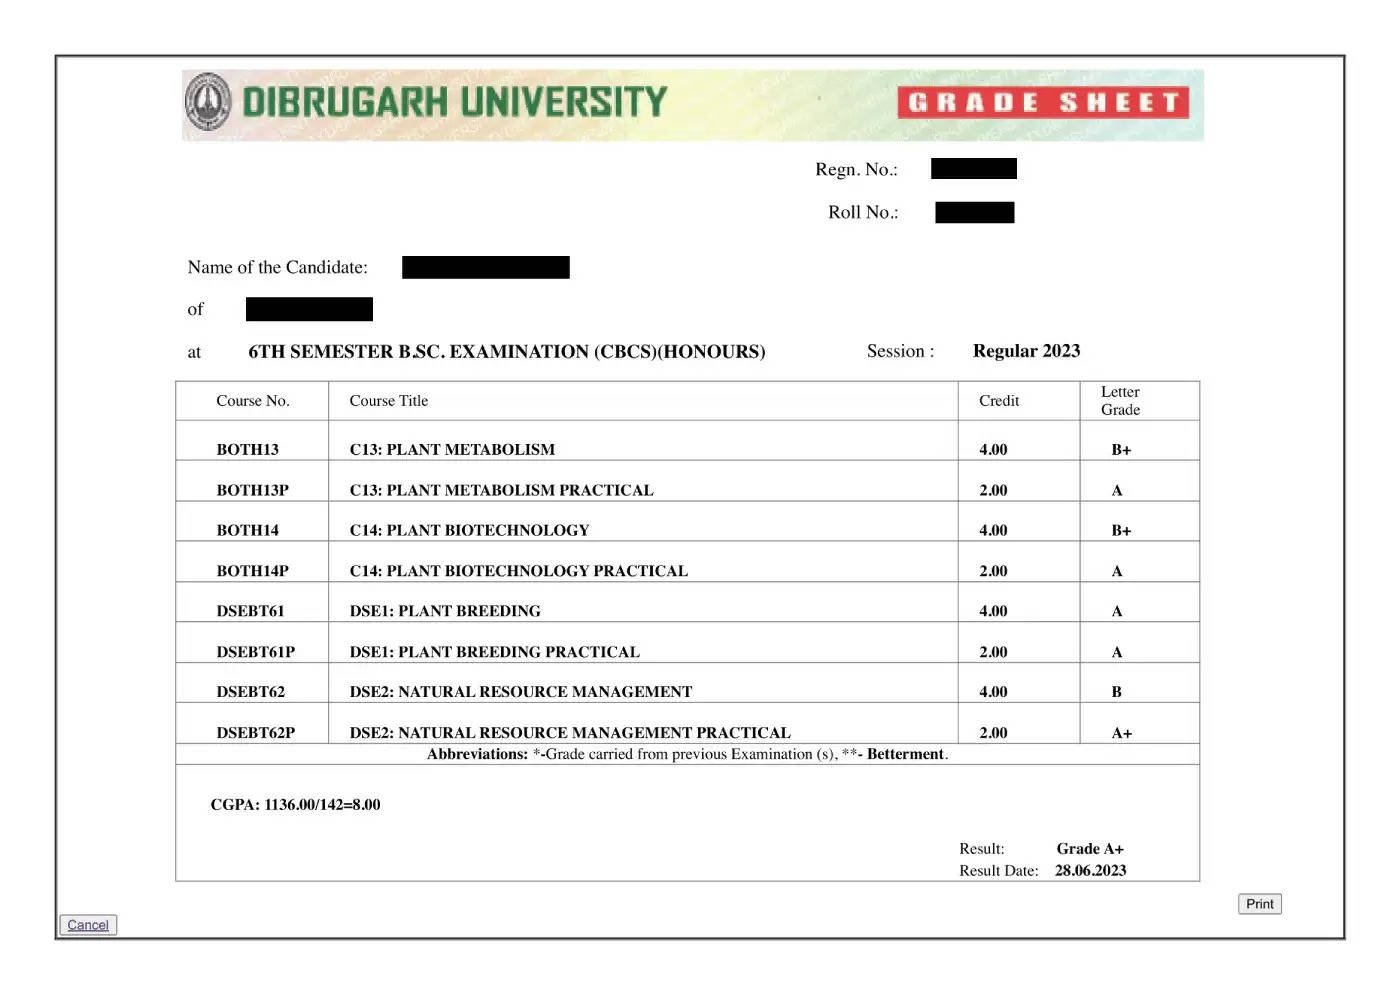 डिब्रूगढ़ विश्वविद्यालय परिणाम 2023 dibru.ac.in पर जारी: यूजी, पीजी मार्कशीट डाउनलोड करें